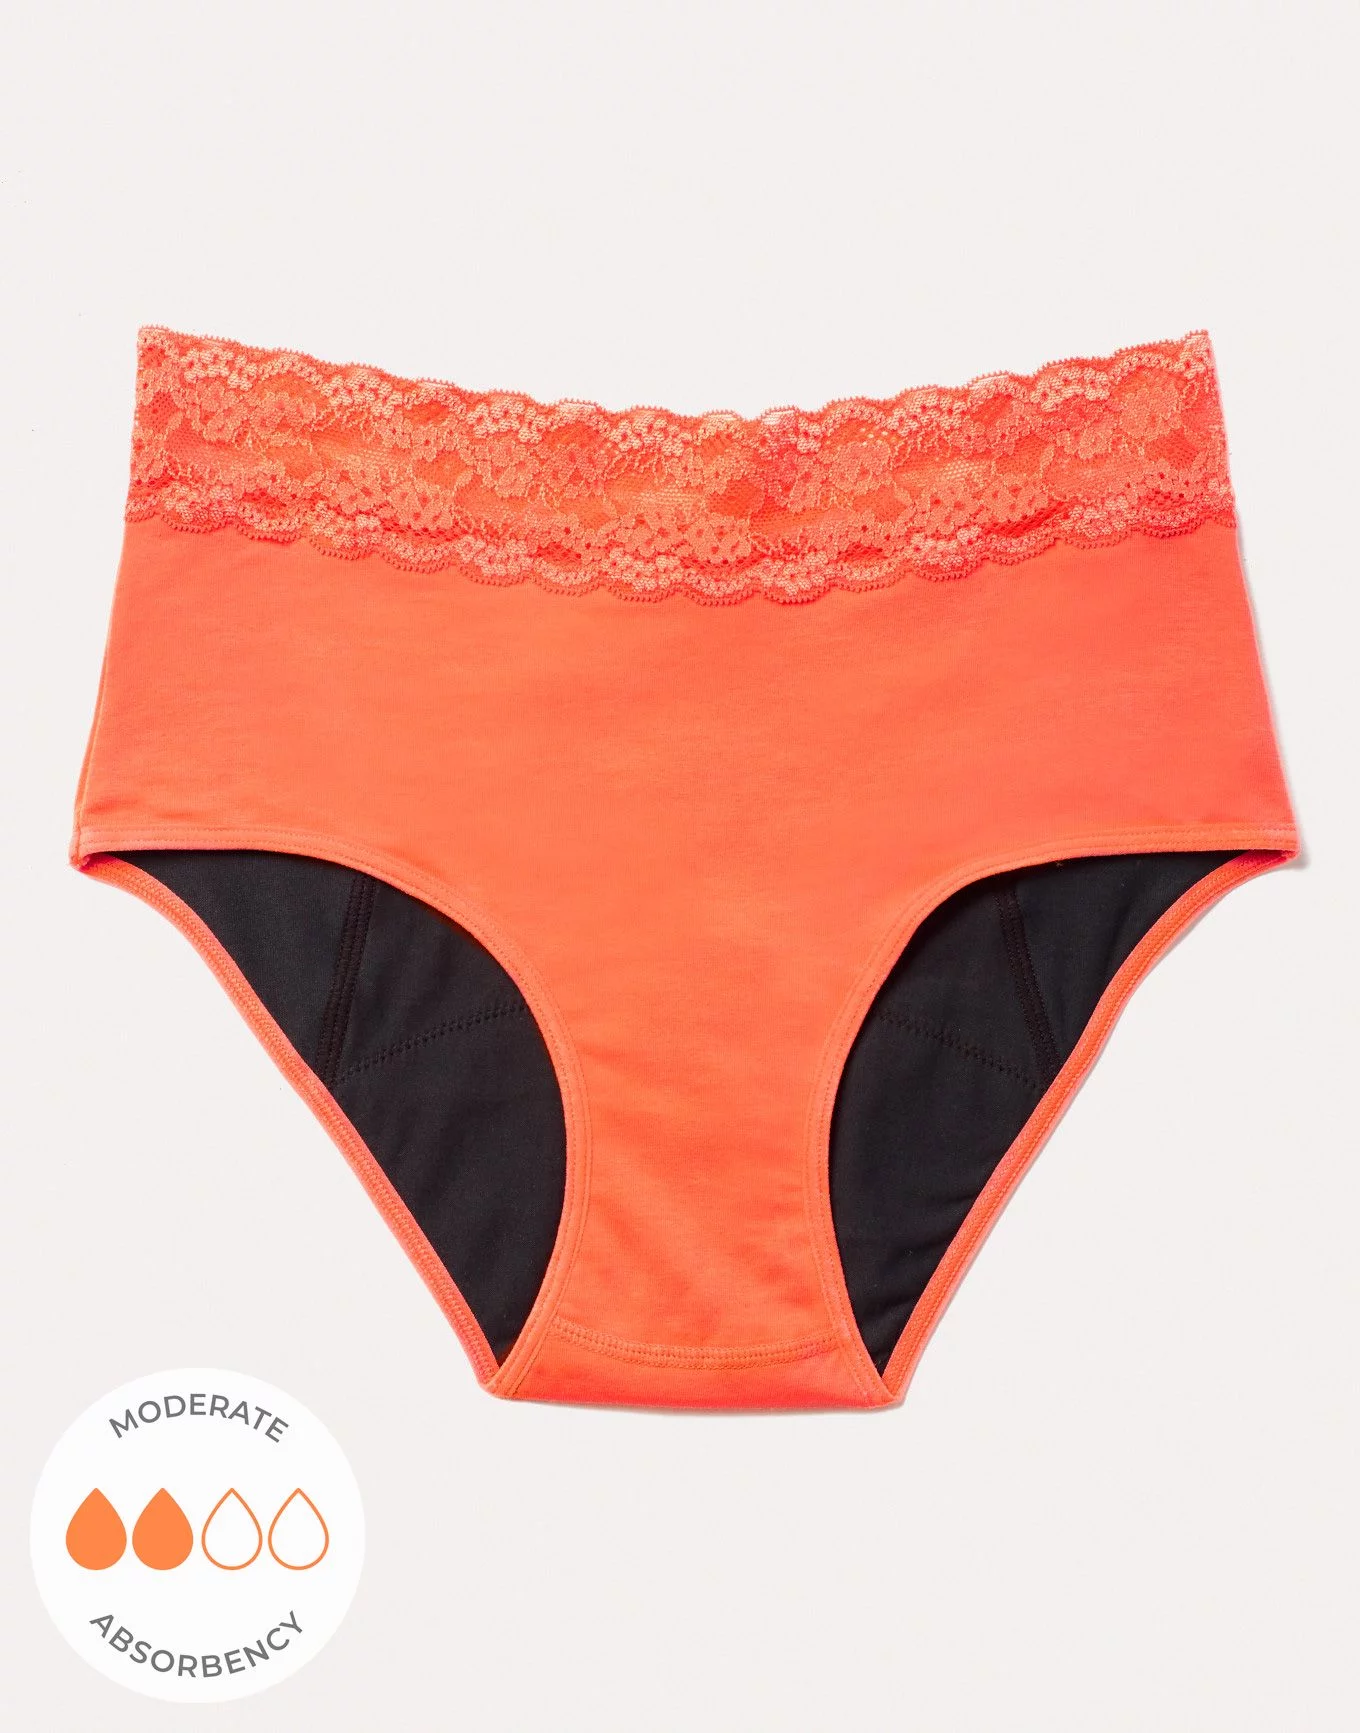 JDEFEG Home Wear for Women Cotton Women's High Waist Belly Closing and  Lifting Pattern Underwear Underwear Women Brief Polyester Orange M 